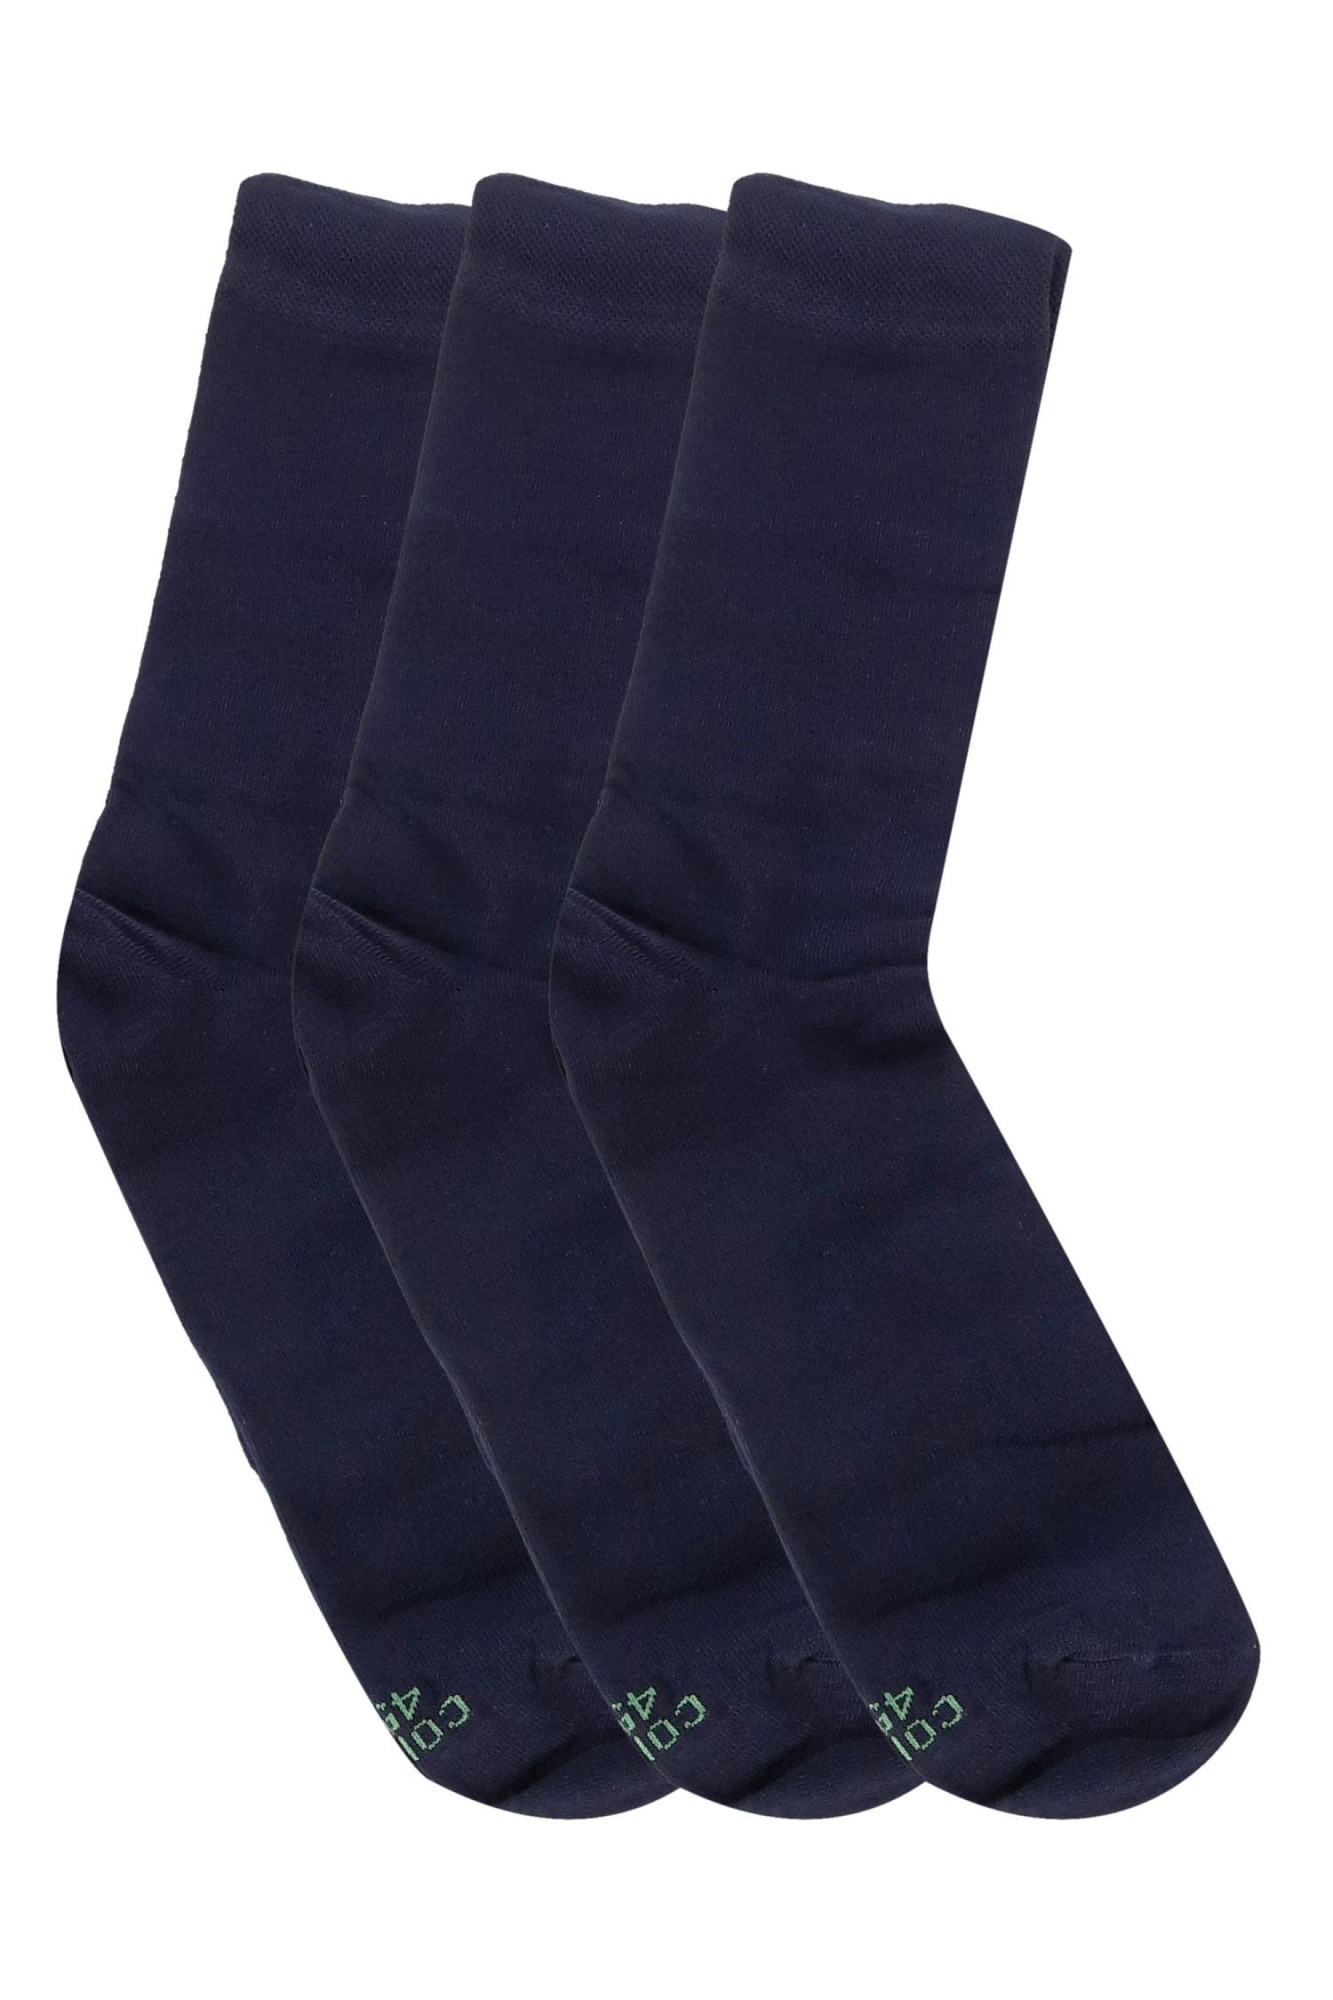 Pánské ponožky 3 pack Premium 3 pack blue - CORNETTE tmavě modrá 42/44